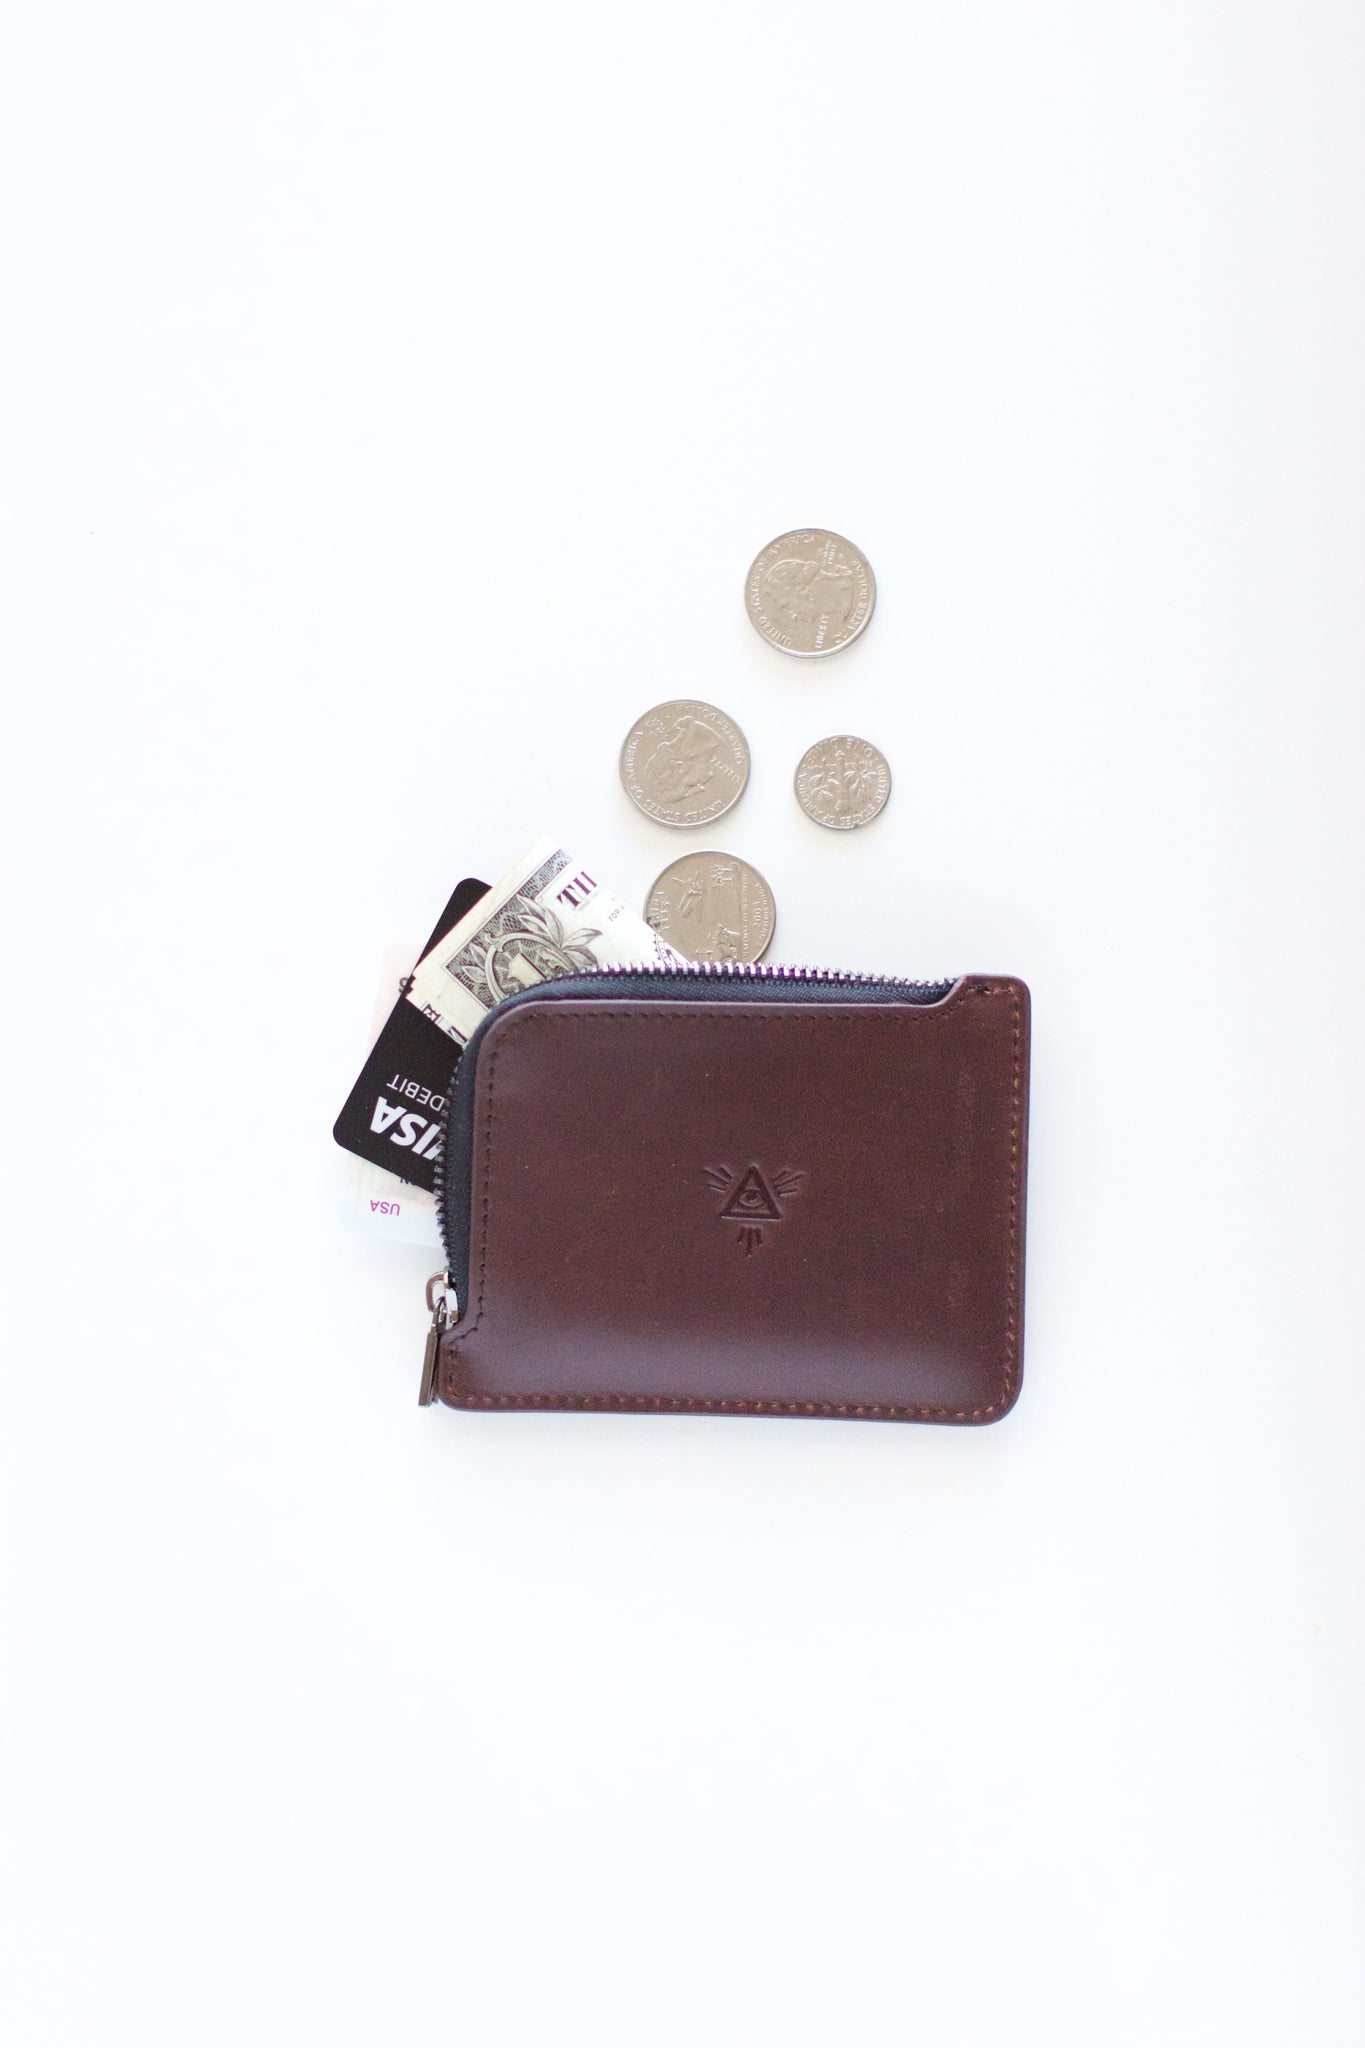  ファイン(Fine) FIN-980PL Compact Wallet with Reel